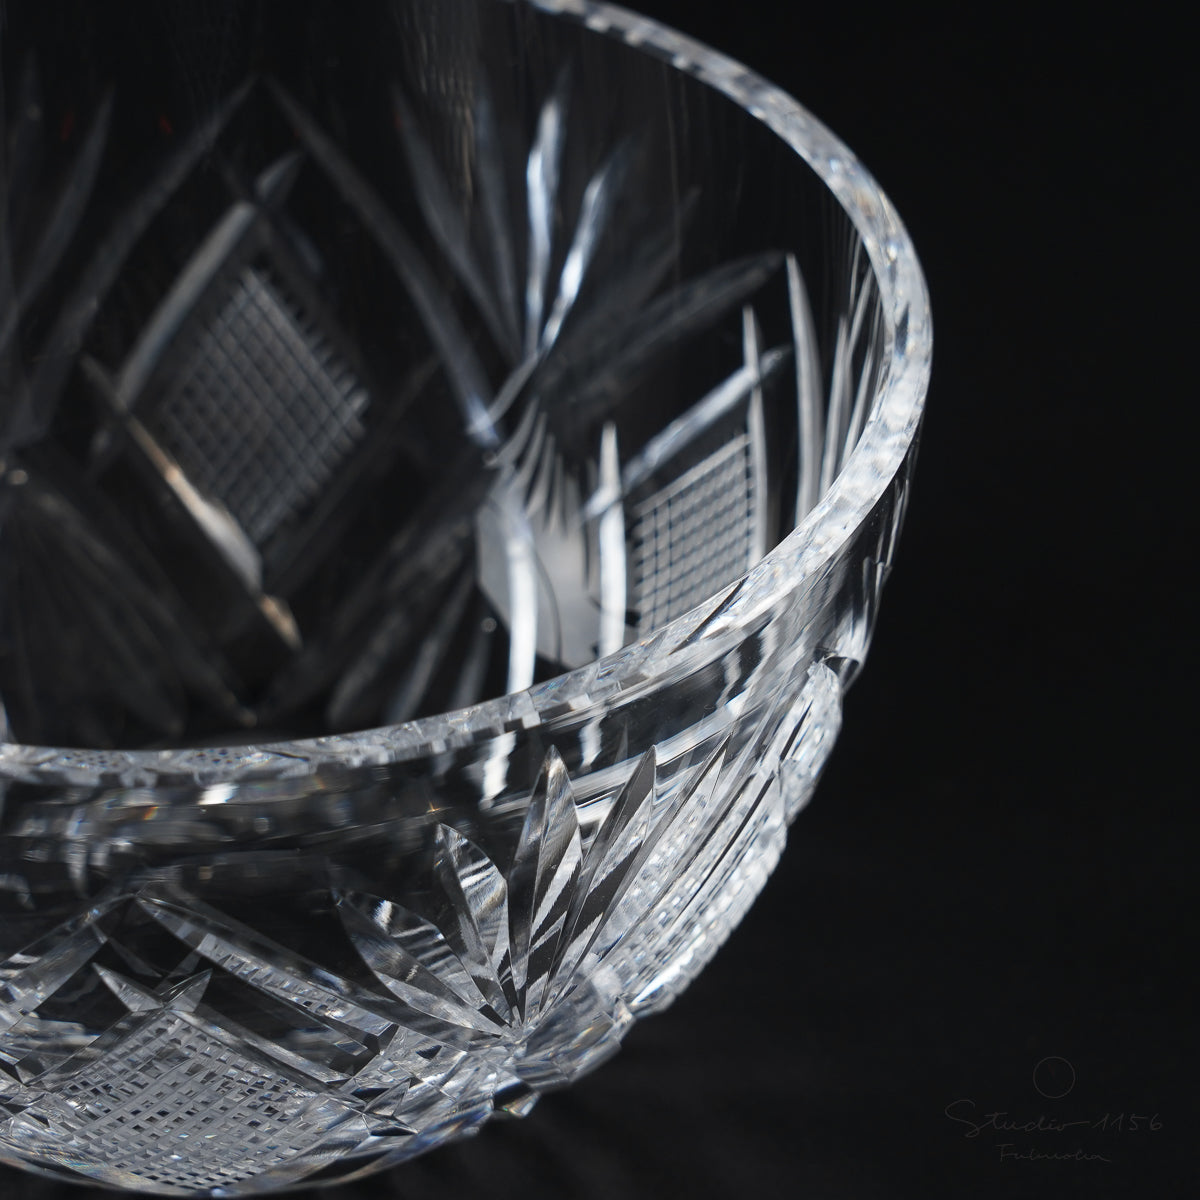 ガラス食器 セミクリスタル 切子ハンドカット 飛鳥 中鉢 12cm [廃番特価品] Yoshinuma-glass Studio1156